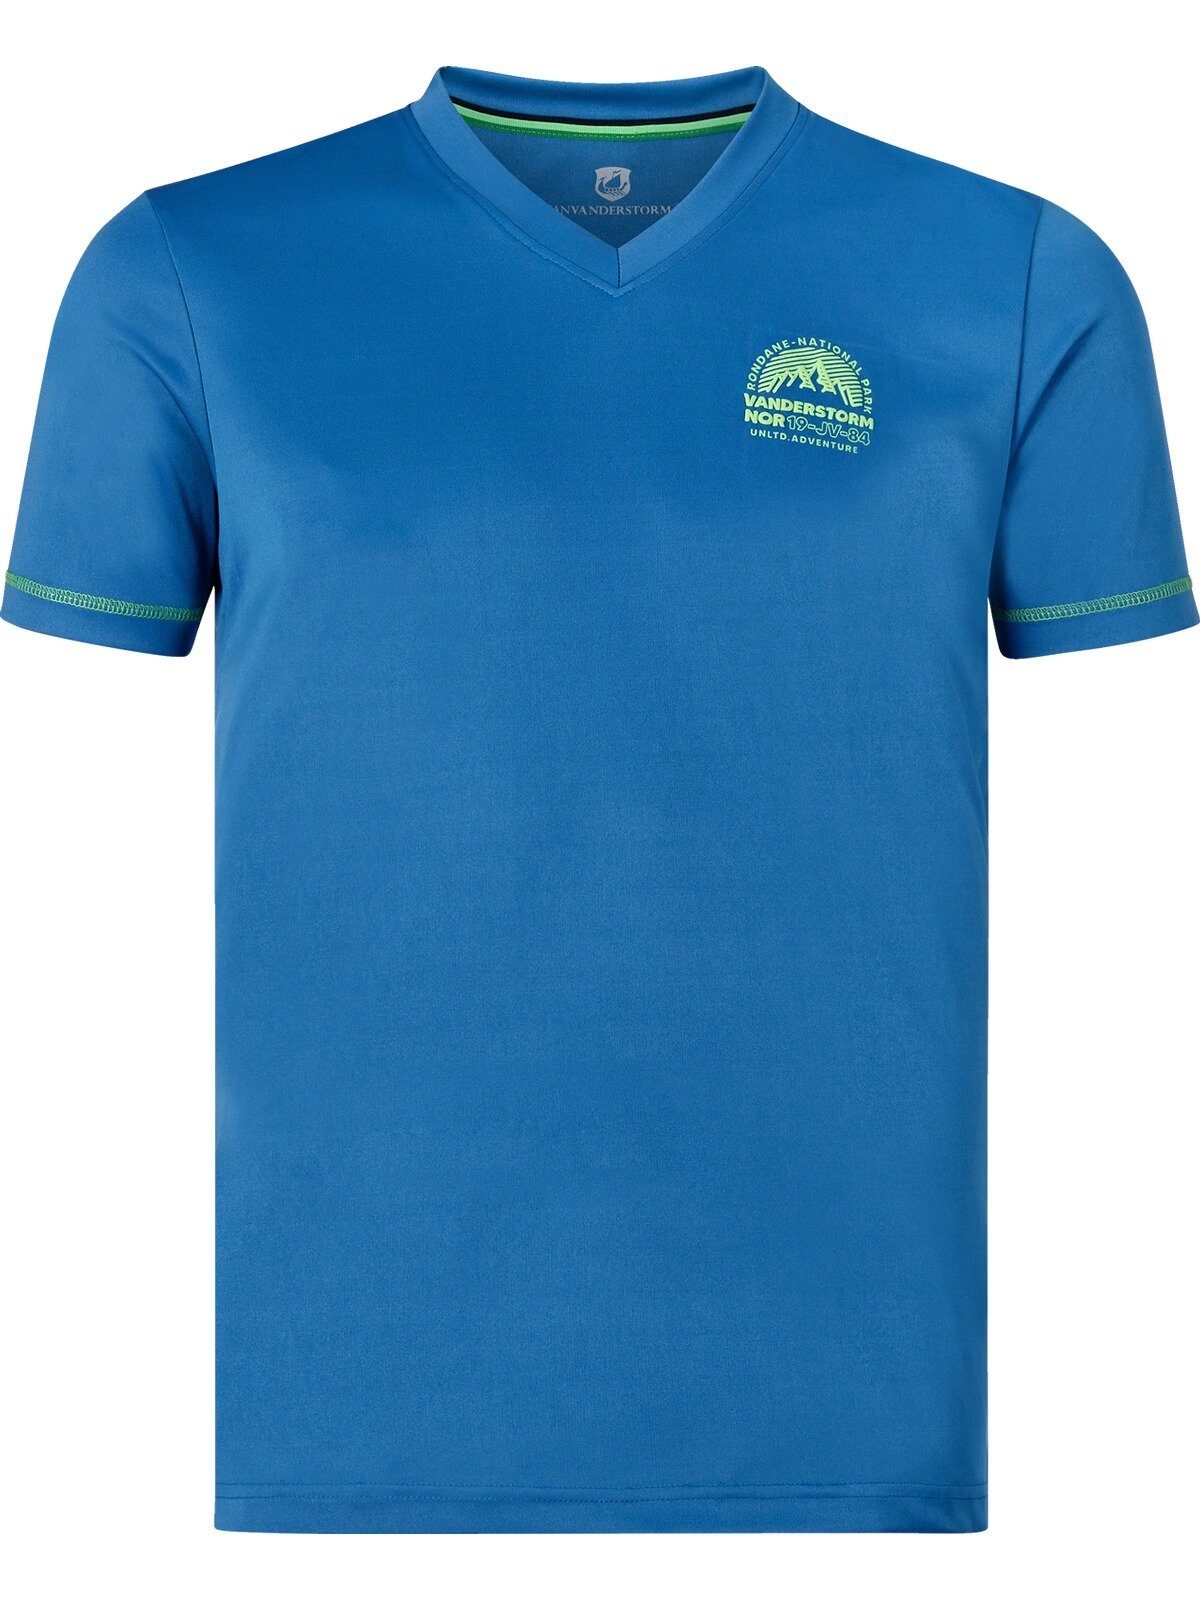 Vanderstorm Jan haut- T-Shirt blau und pflegefreundlich KLARIN